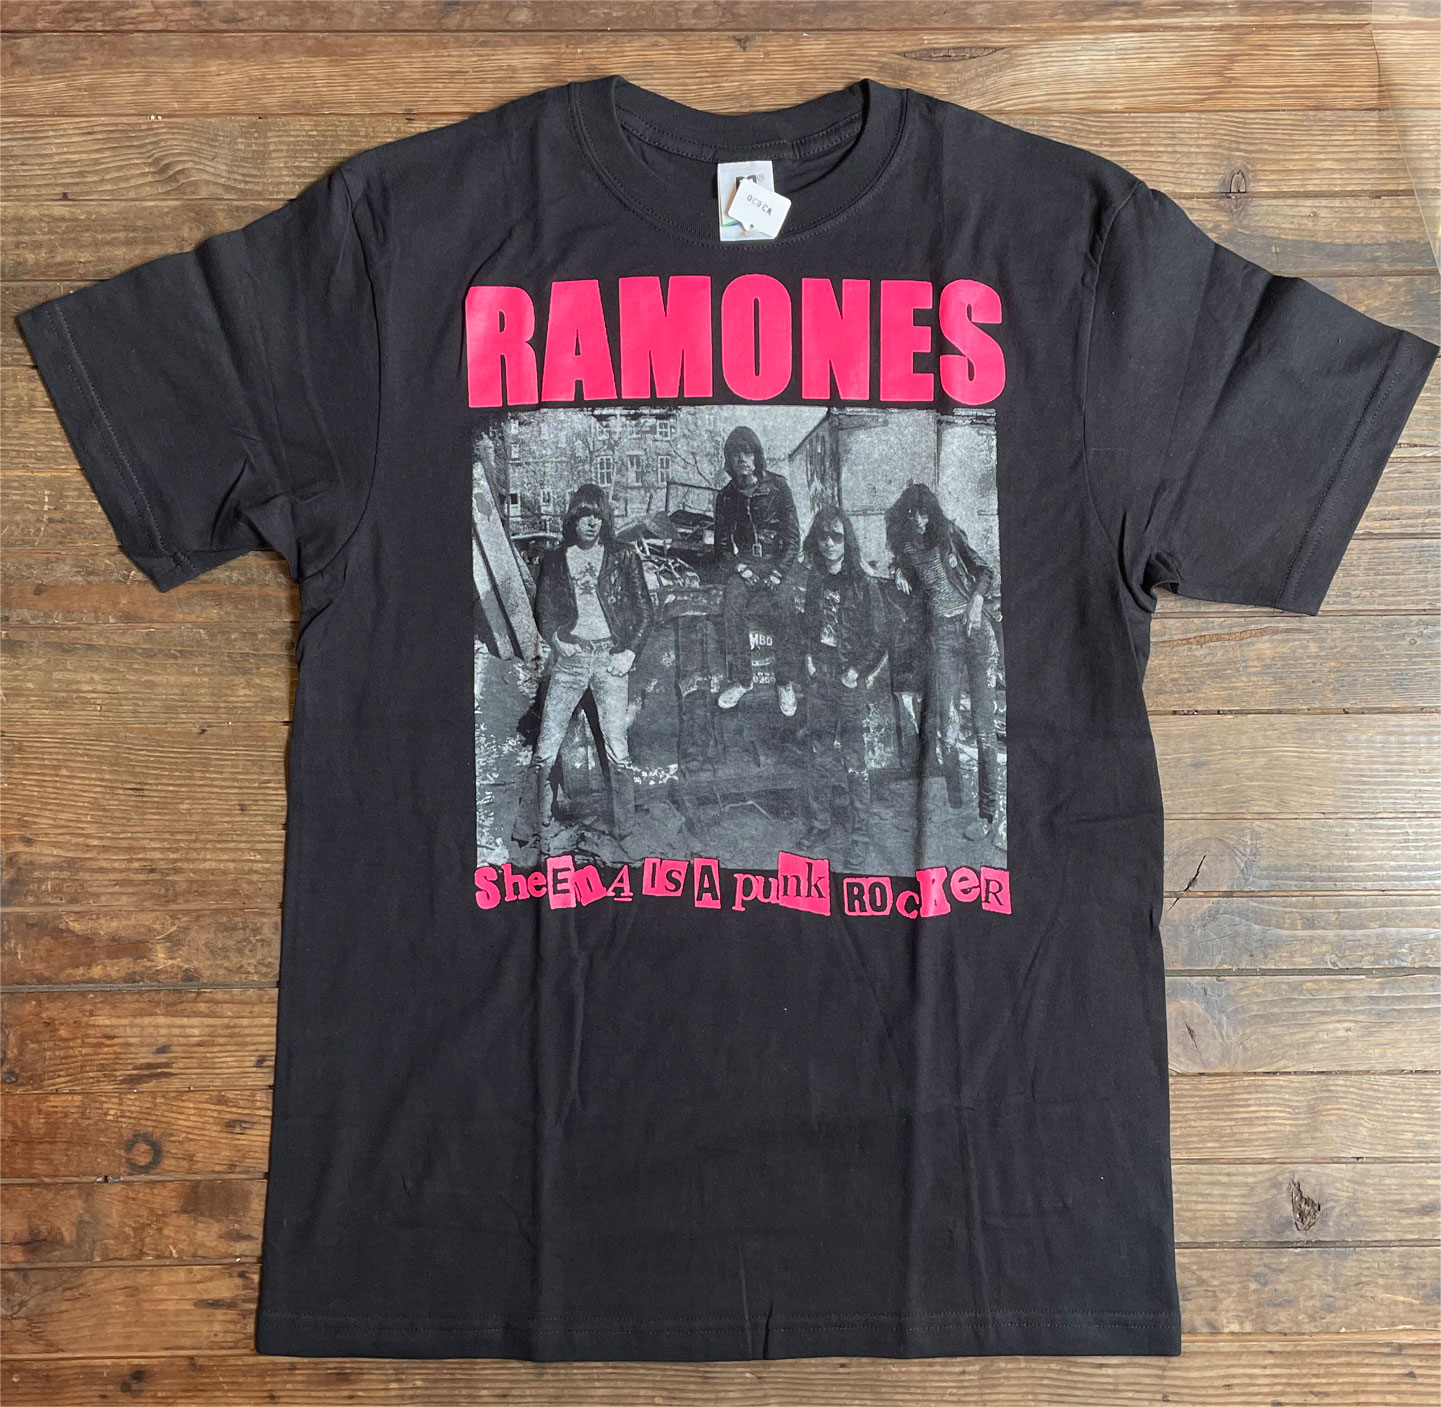 RAMONES Tシャツ SHEENA IS A PUNK ROCKER